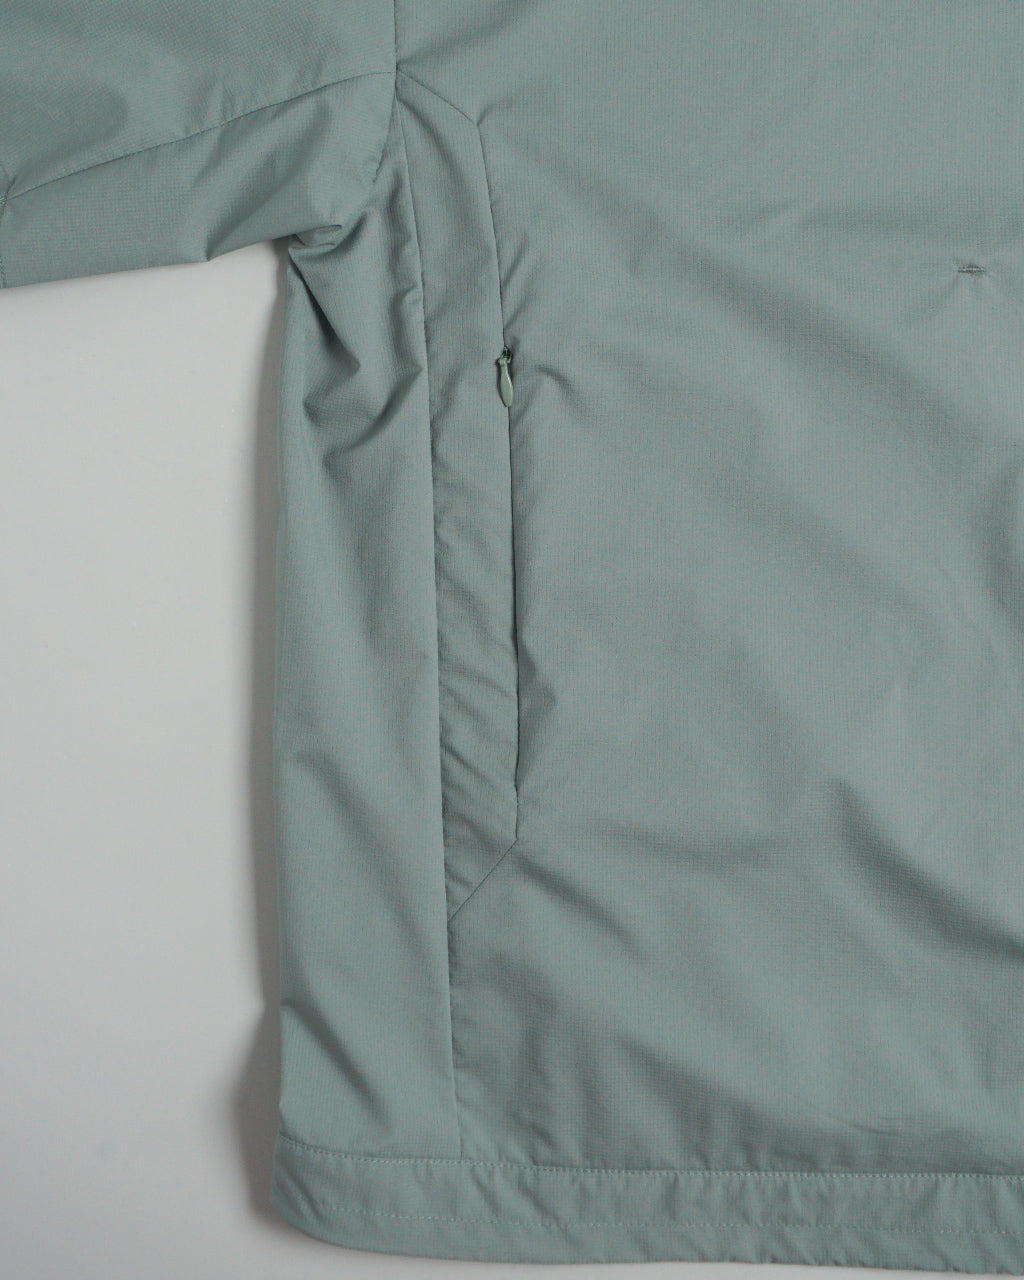 F/CE. エフシーイー パーテックス テック ティーシャツ PERTEX TECH T-SHIRT    FPA14241U0004【送料無料】